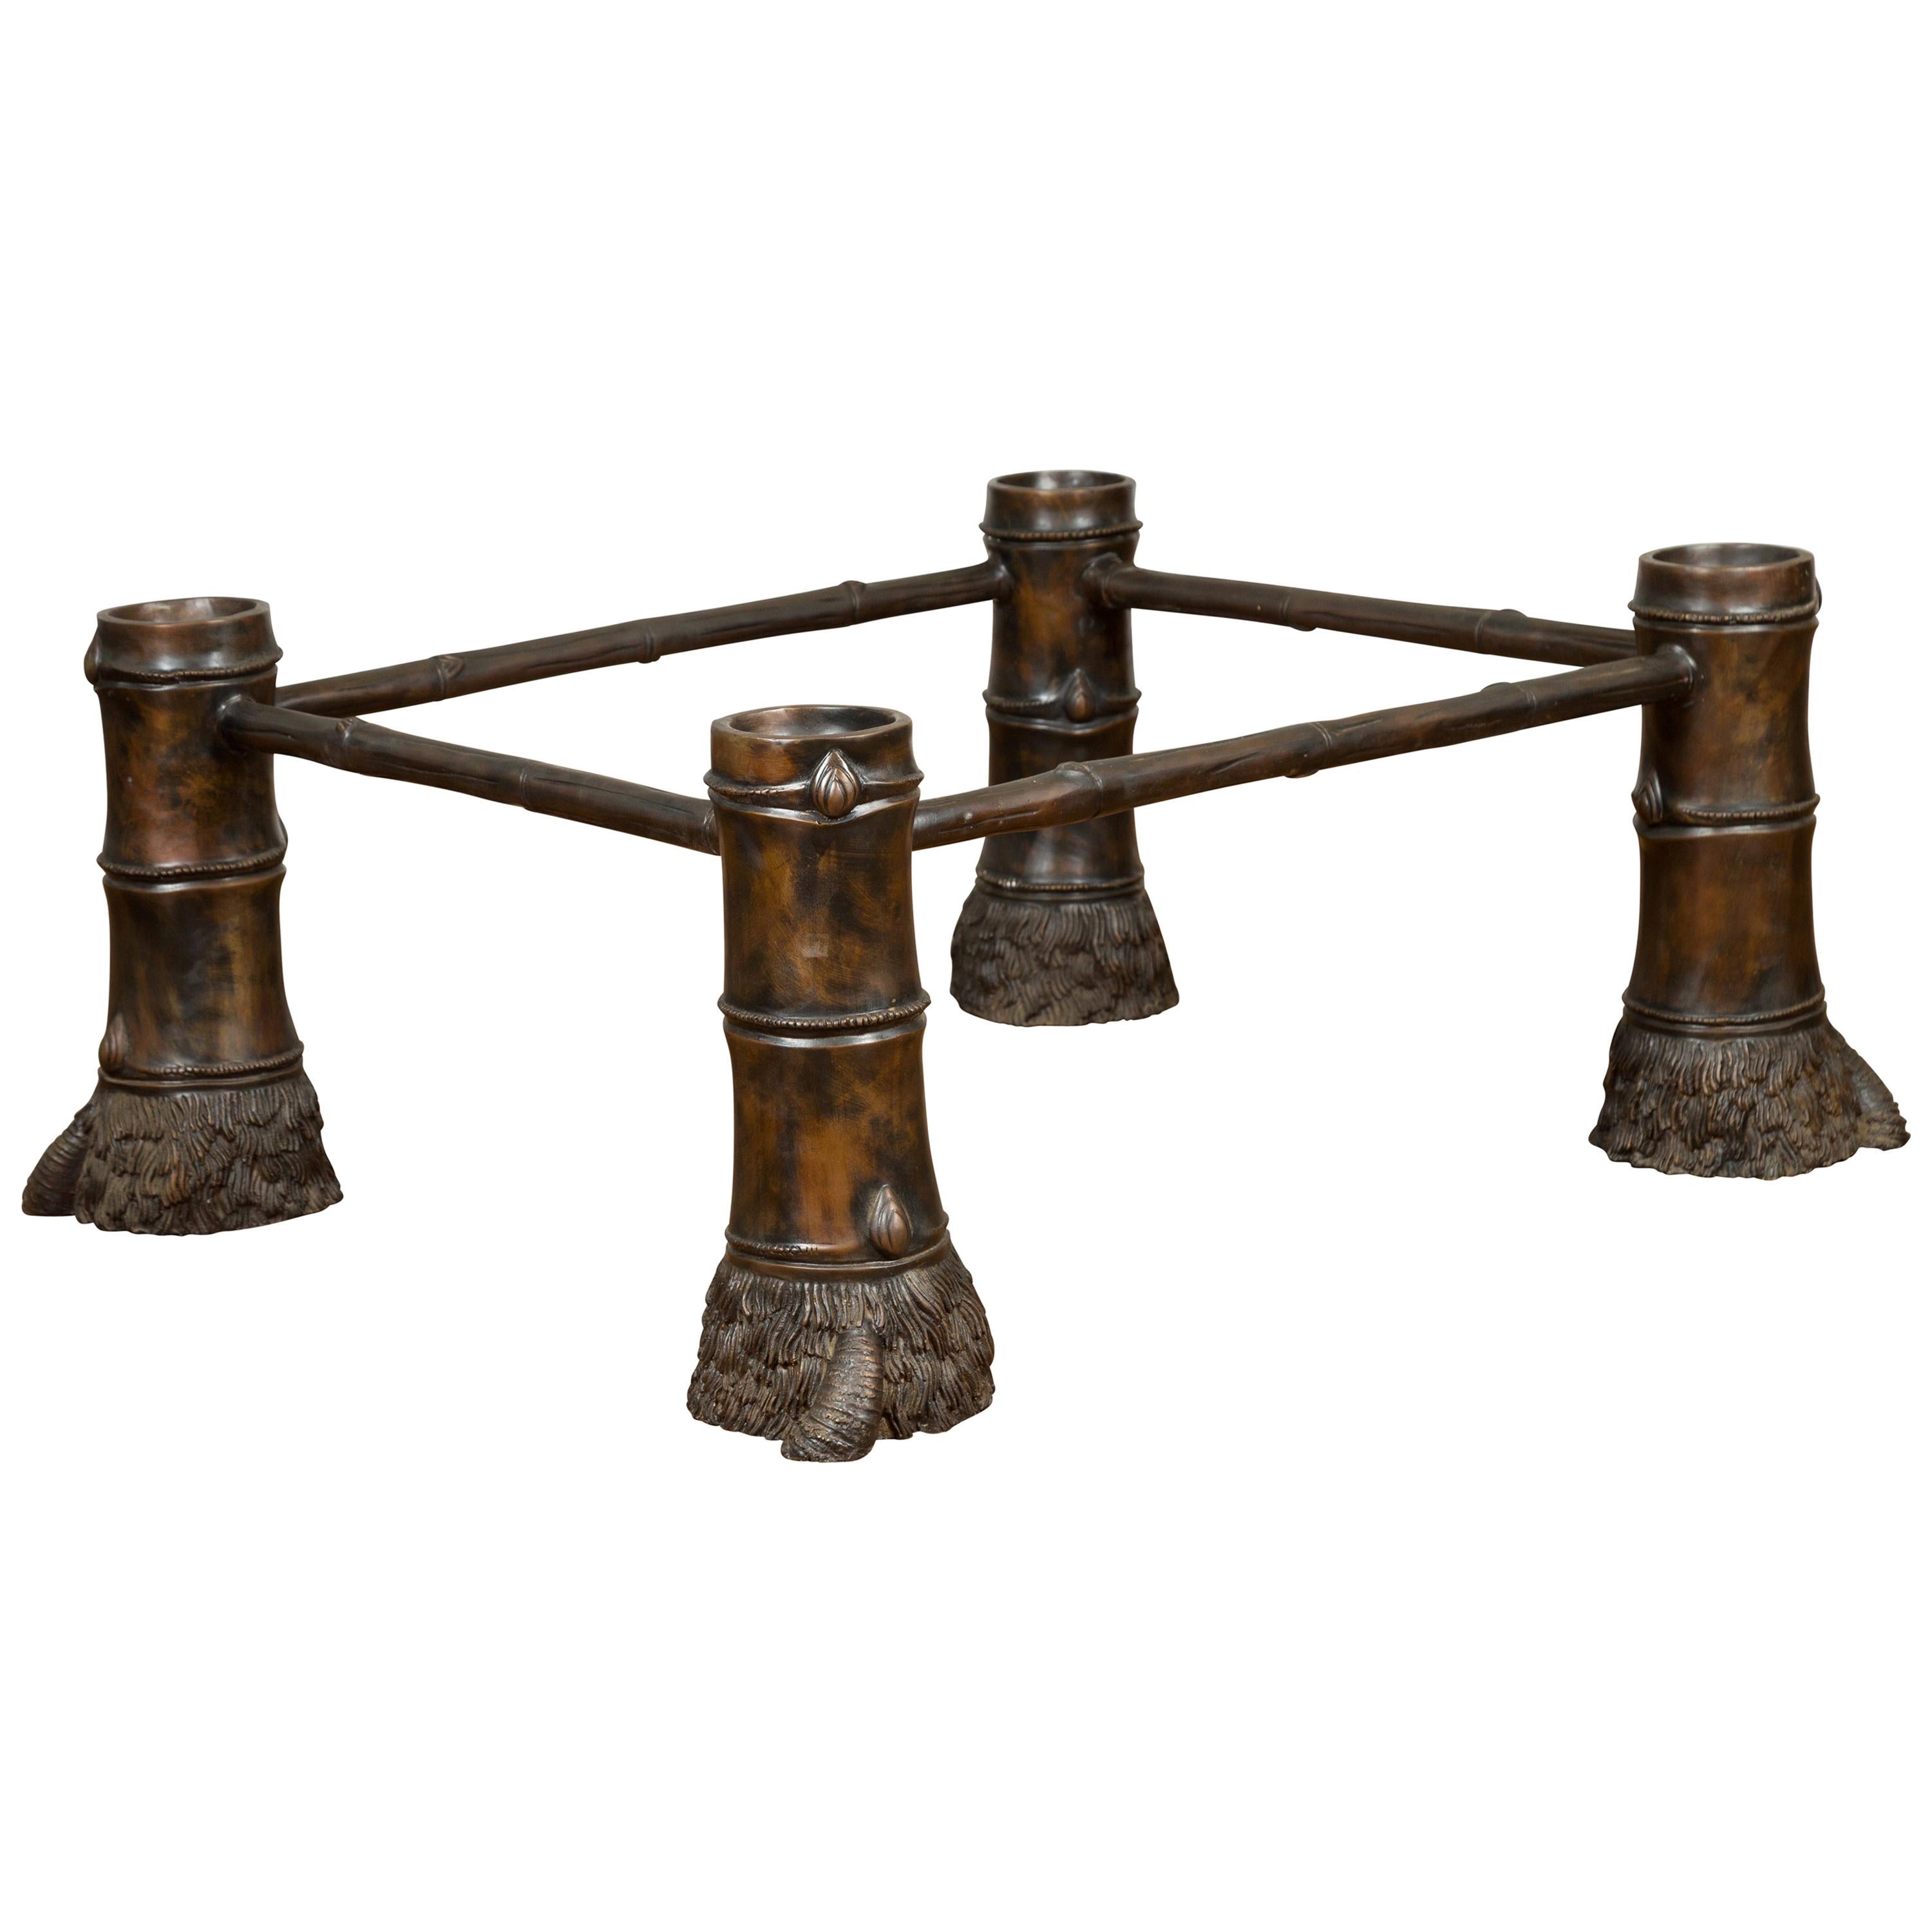 Base de table basse contemporaine en bronze avec grandes pieds en forme de sabot et patine marron